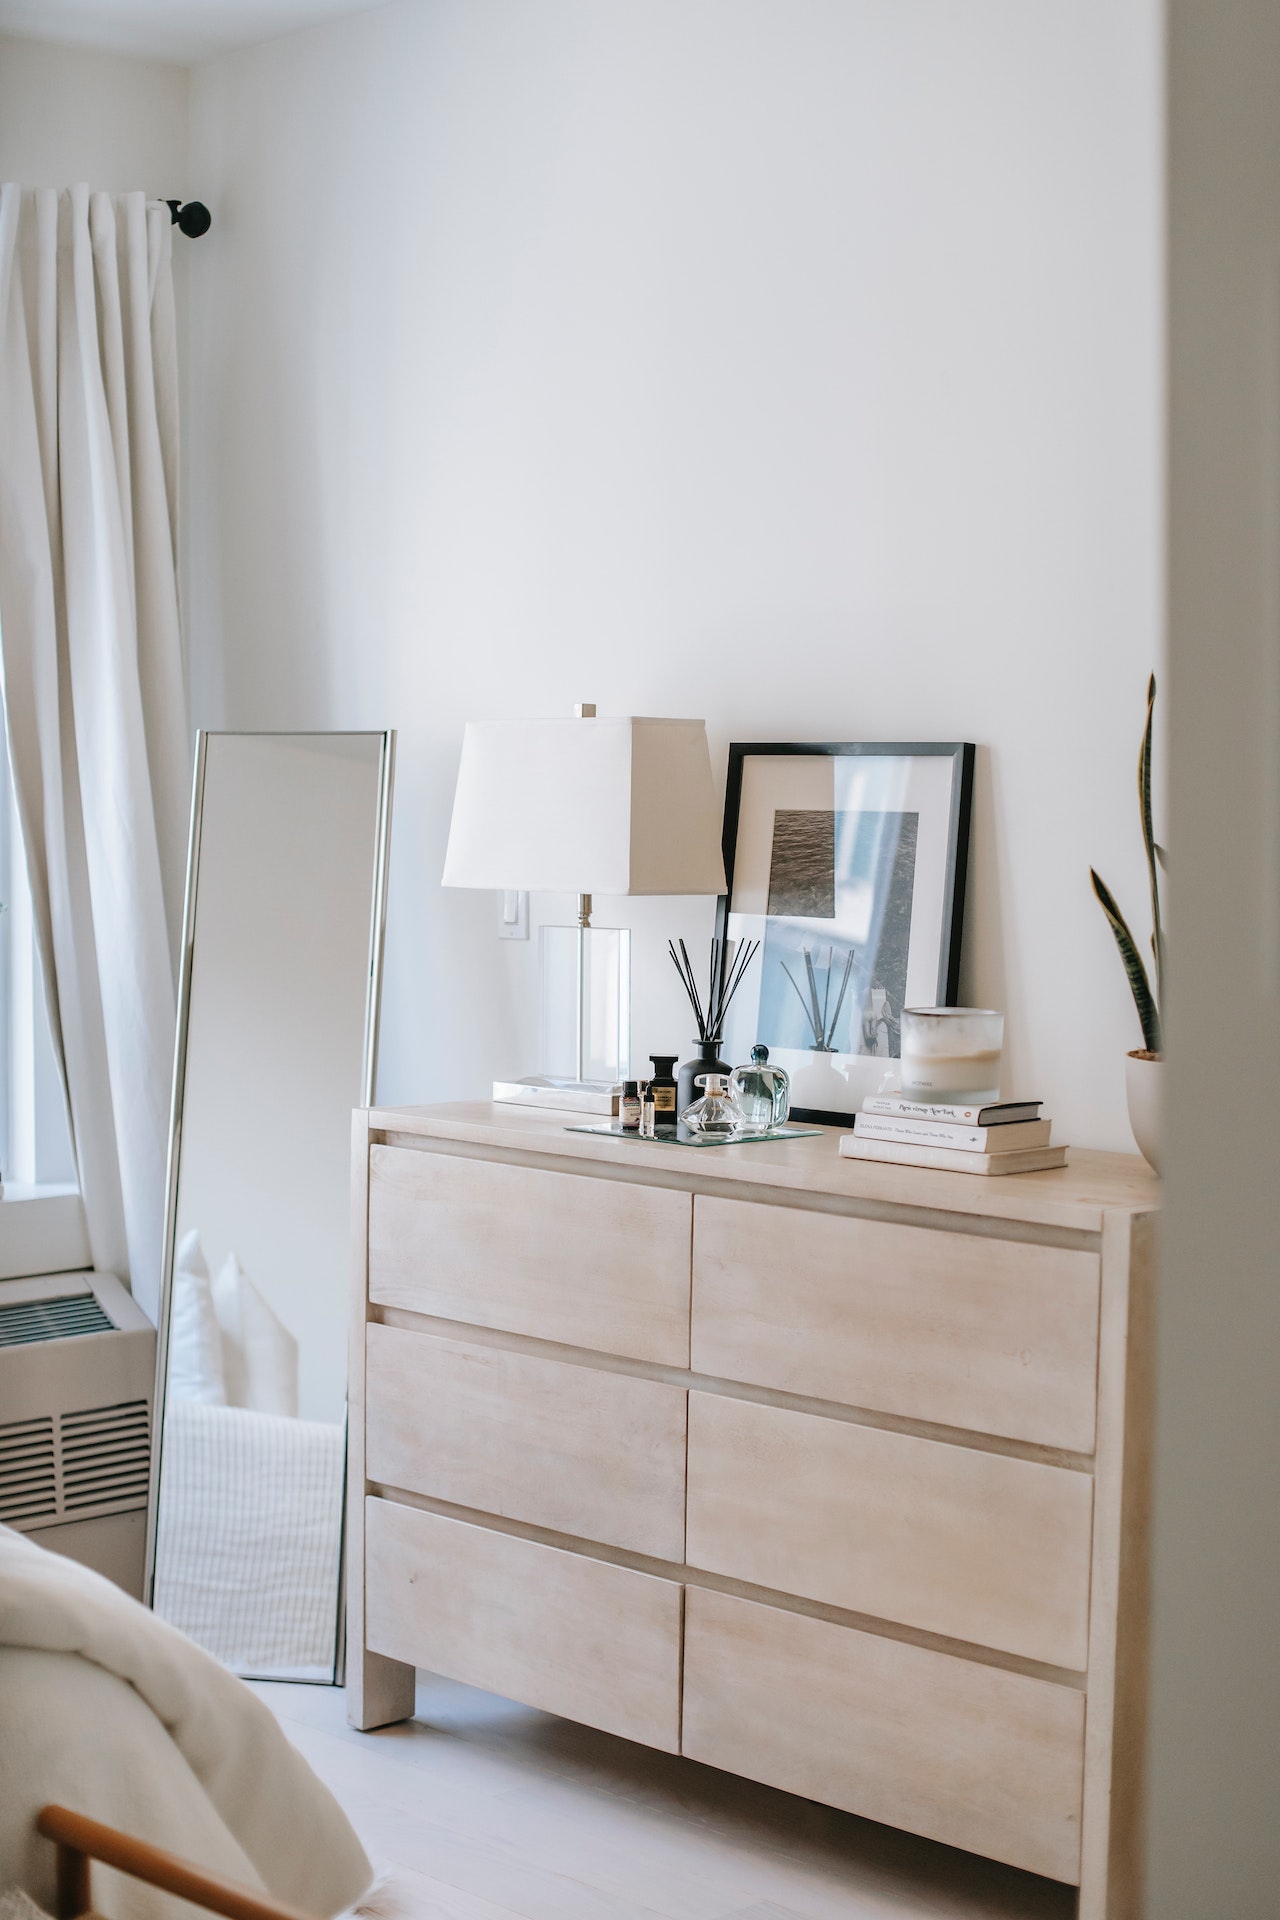 Cómo decorar con la cómoda blanca  Decoración de unas, Cómoda blanca,  Decoración del dormitorio